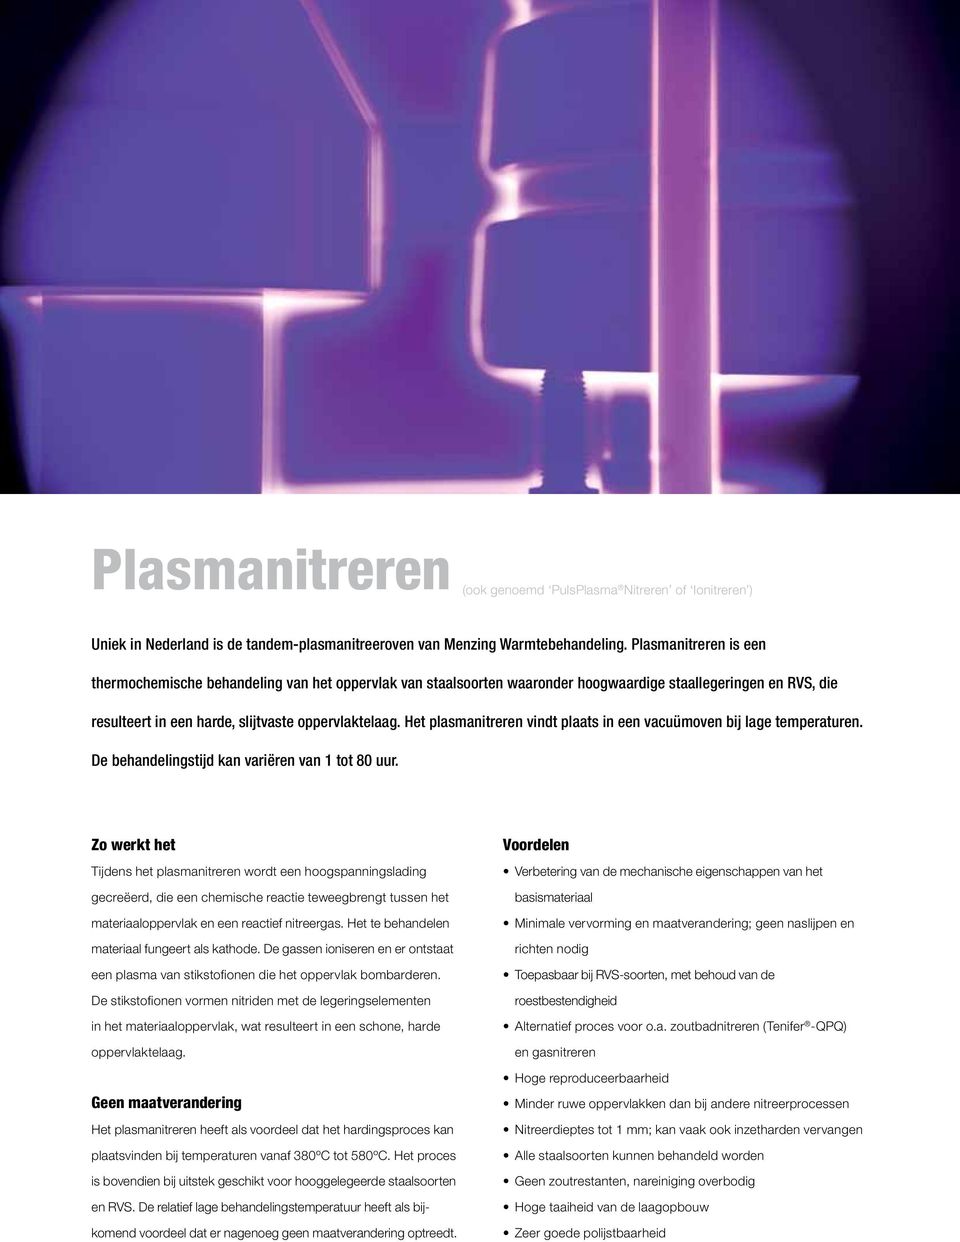 Het plasmanitreren vindt plaats in een vacuümoven bij lage temperaturen. De behandelingstijd kan variëren van 1 tot 80 uur.